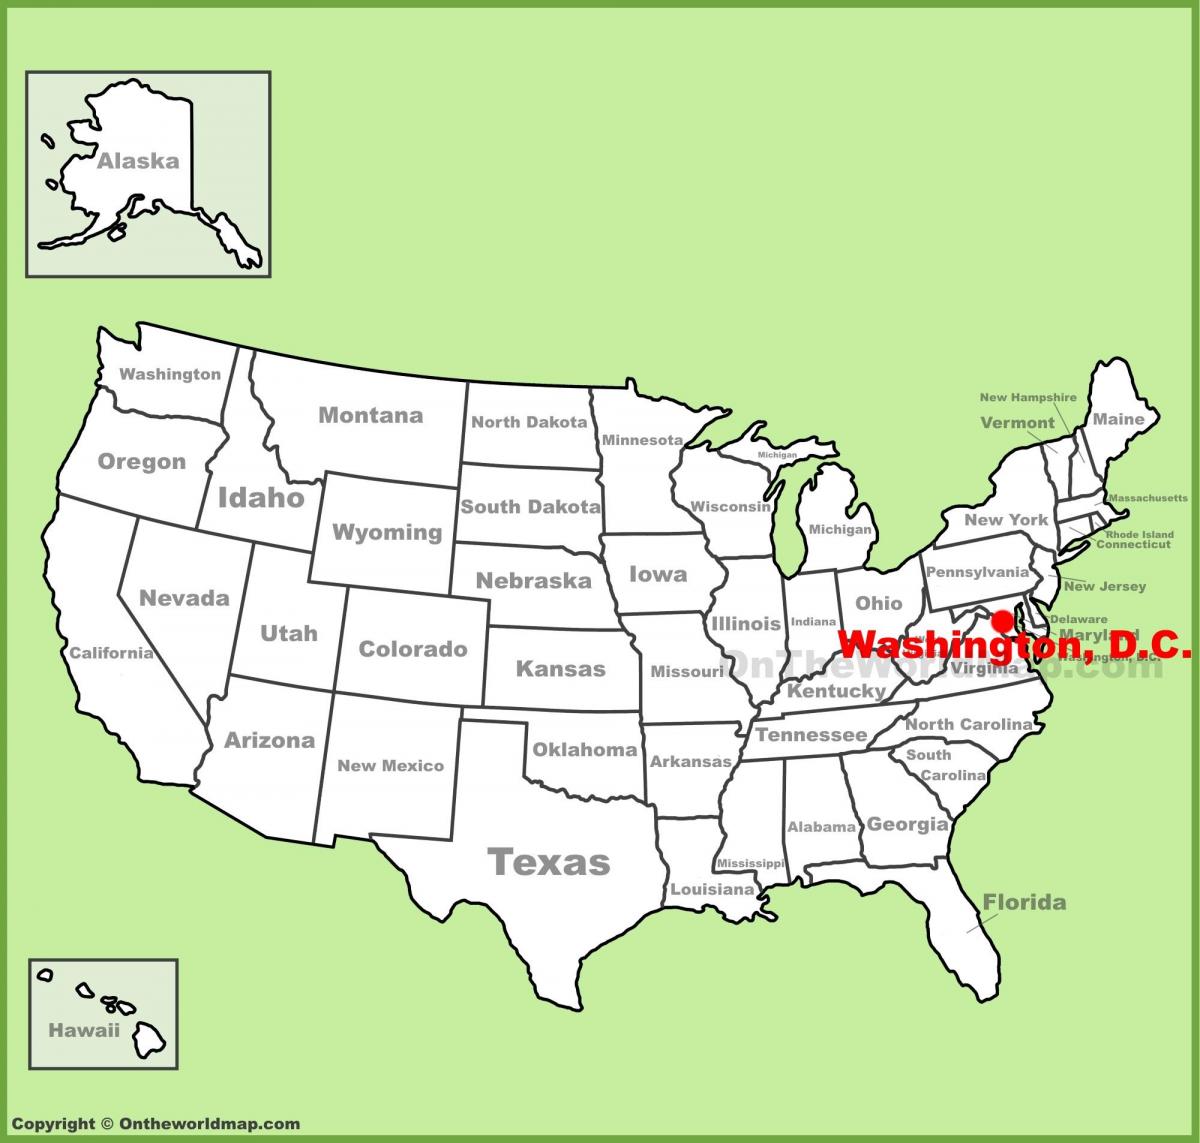 વોશિંગ્ટન ડીસી પર અમેરિકા નકશો